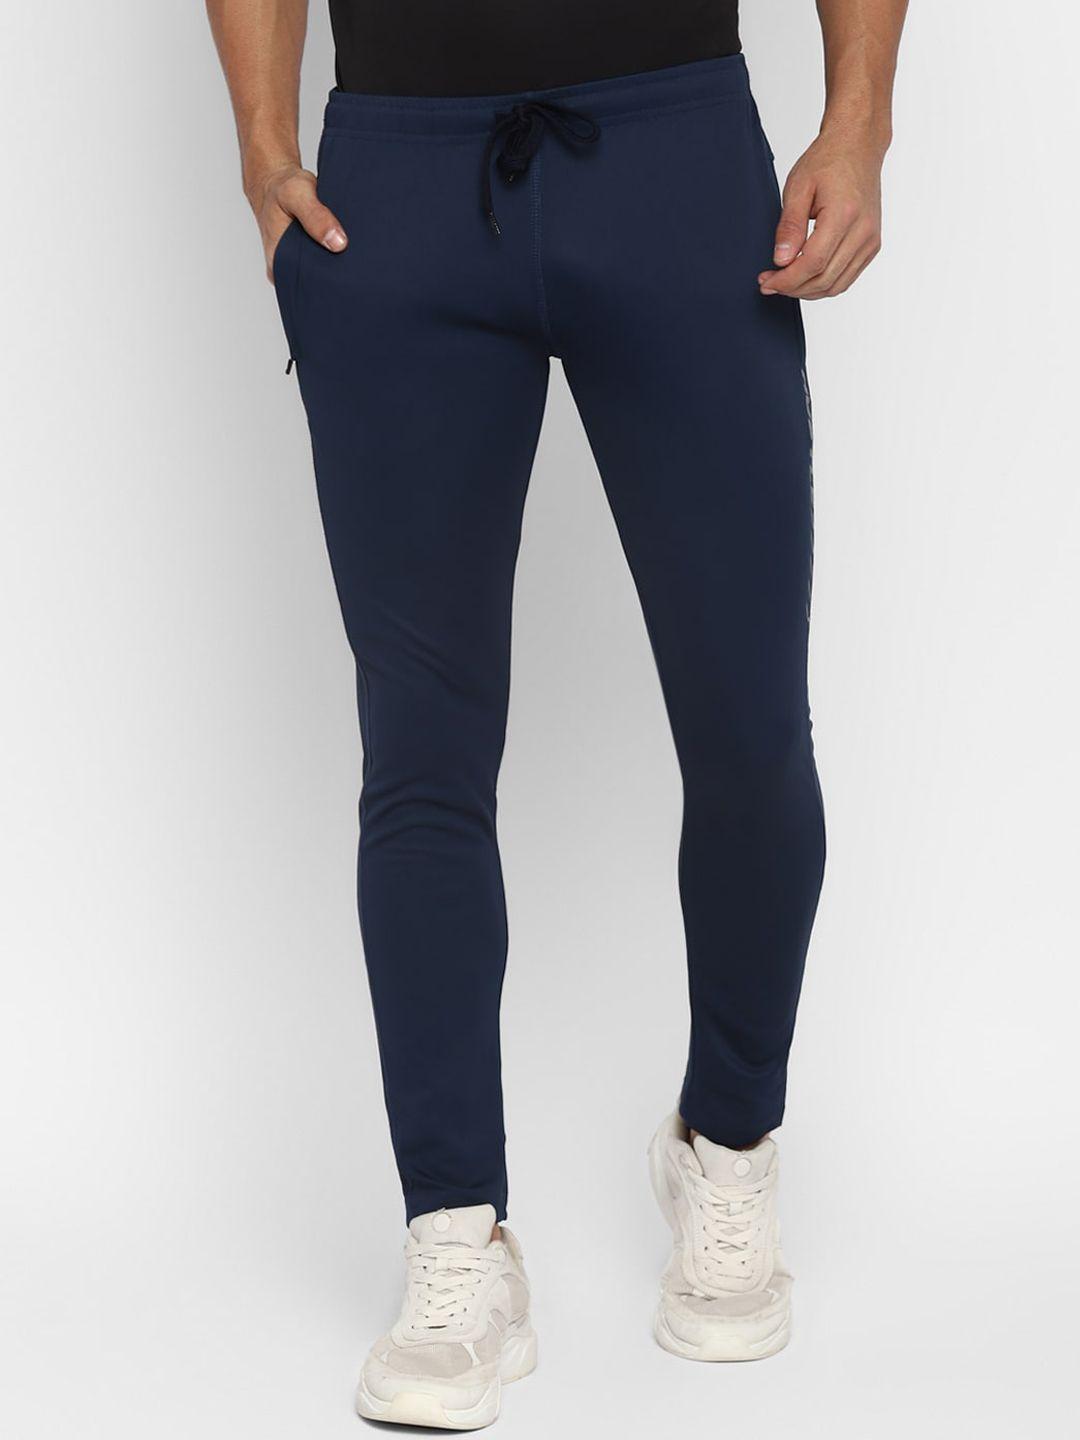 yuuki-men-blue-&-grey-printed-track-pants